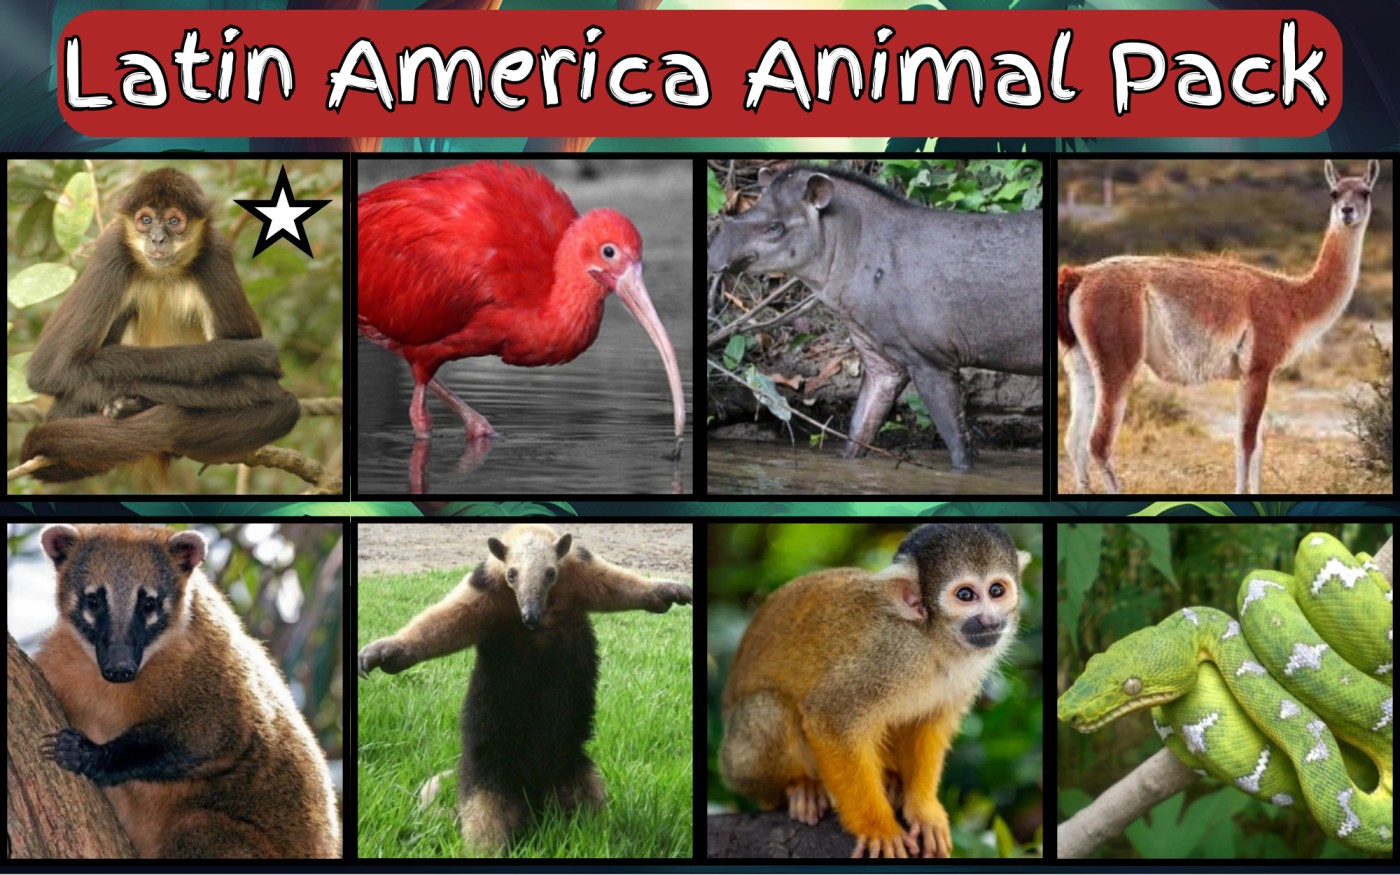 Americas Animal Pack (1).jpg